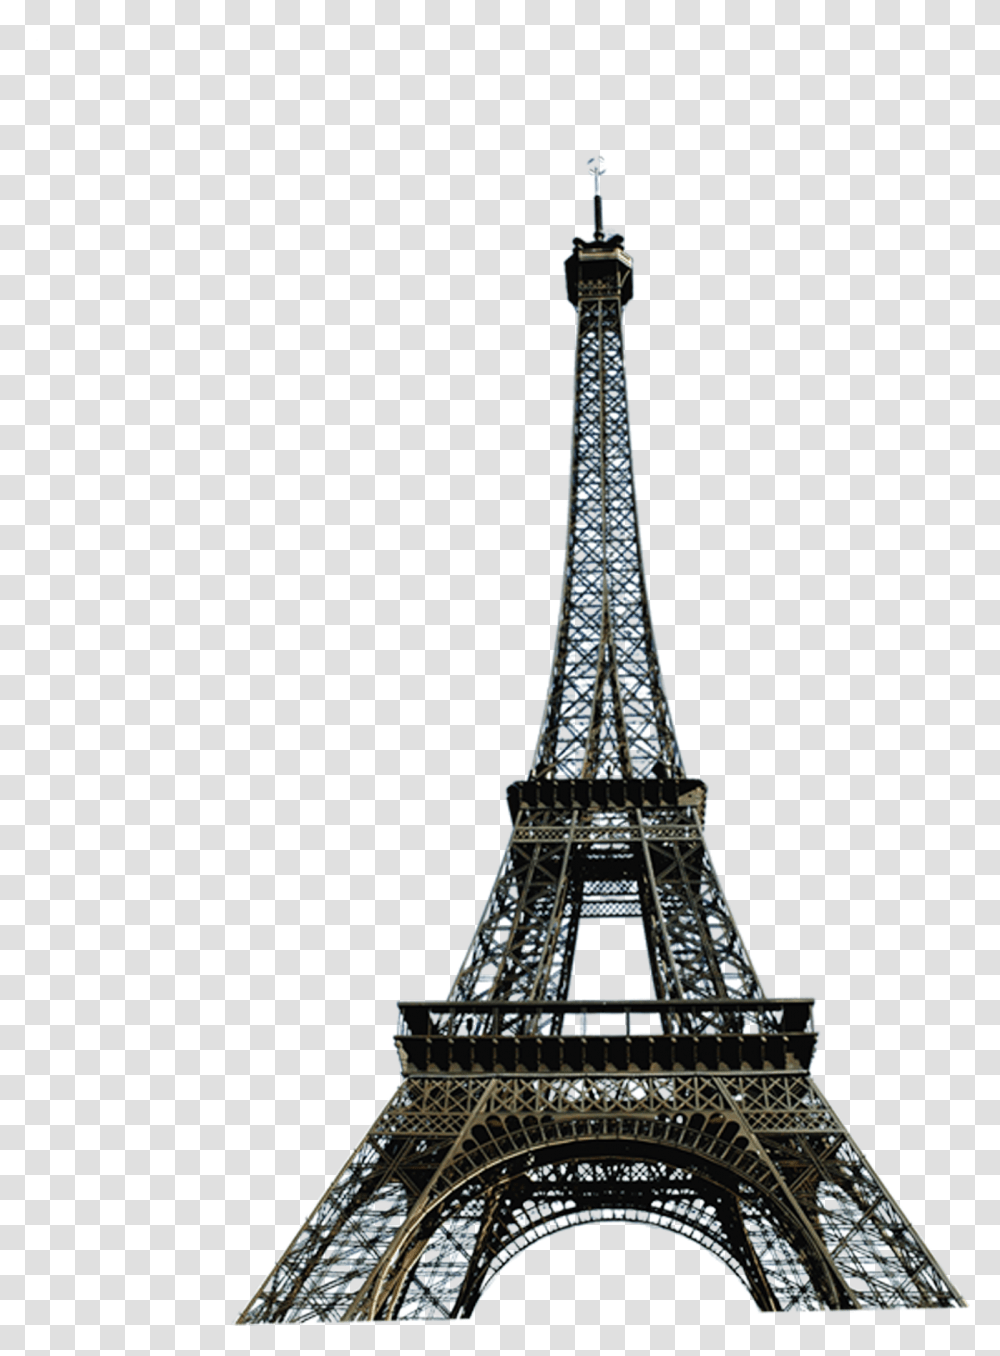 Paris Eiffel Tower Clip Art Paris Eiffel Tower, Architecture, Building, Spire, Steeple Transparent Png